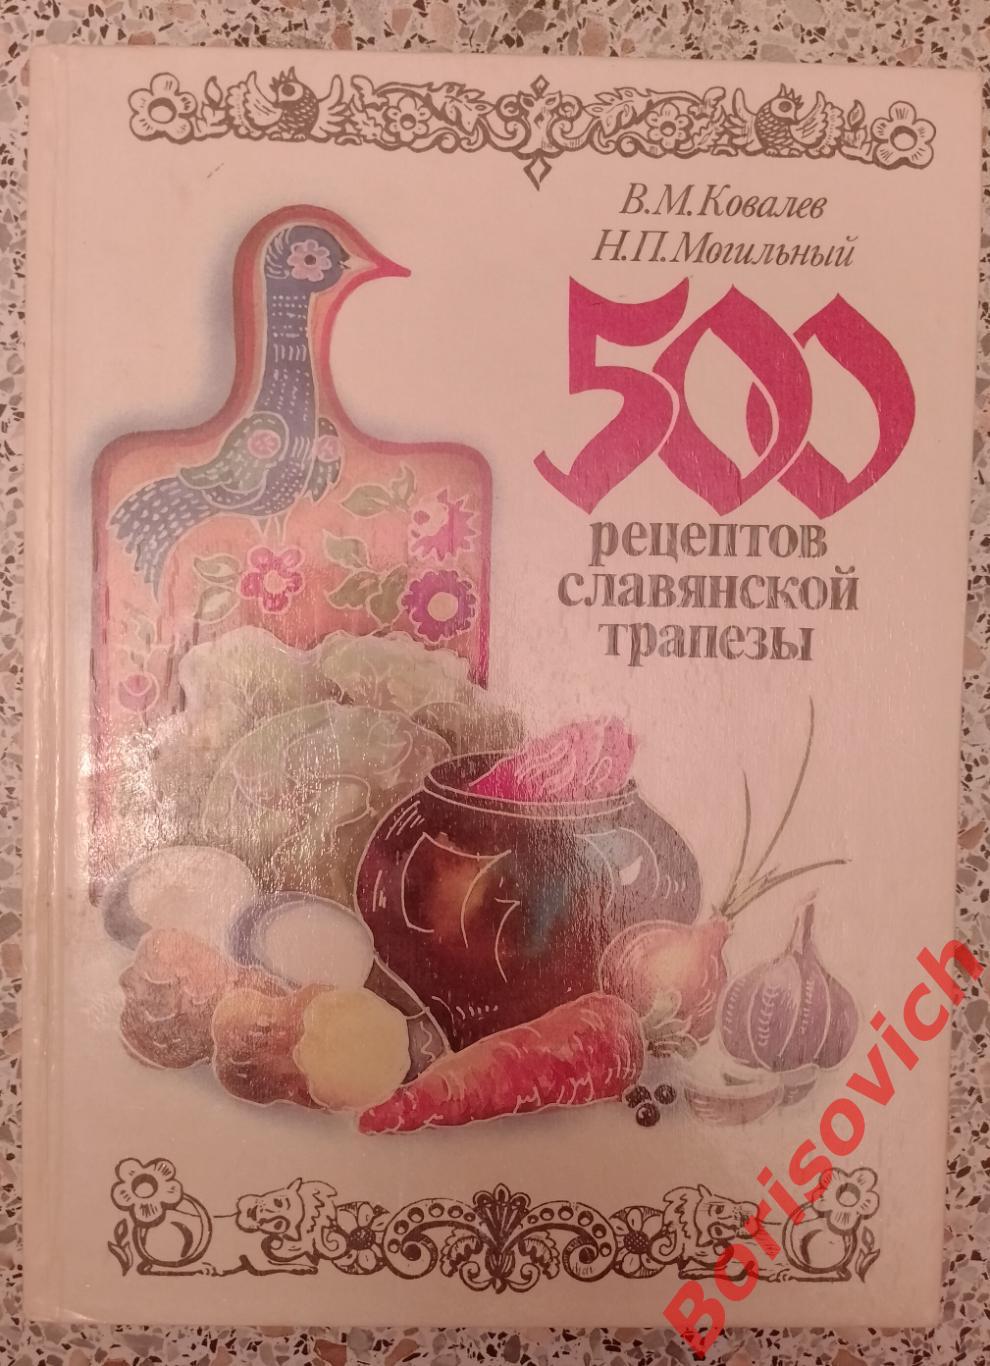 500 рецептов славянской трапезы 1990 г 271 стр Тираж 5000 экз